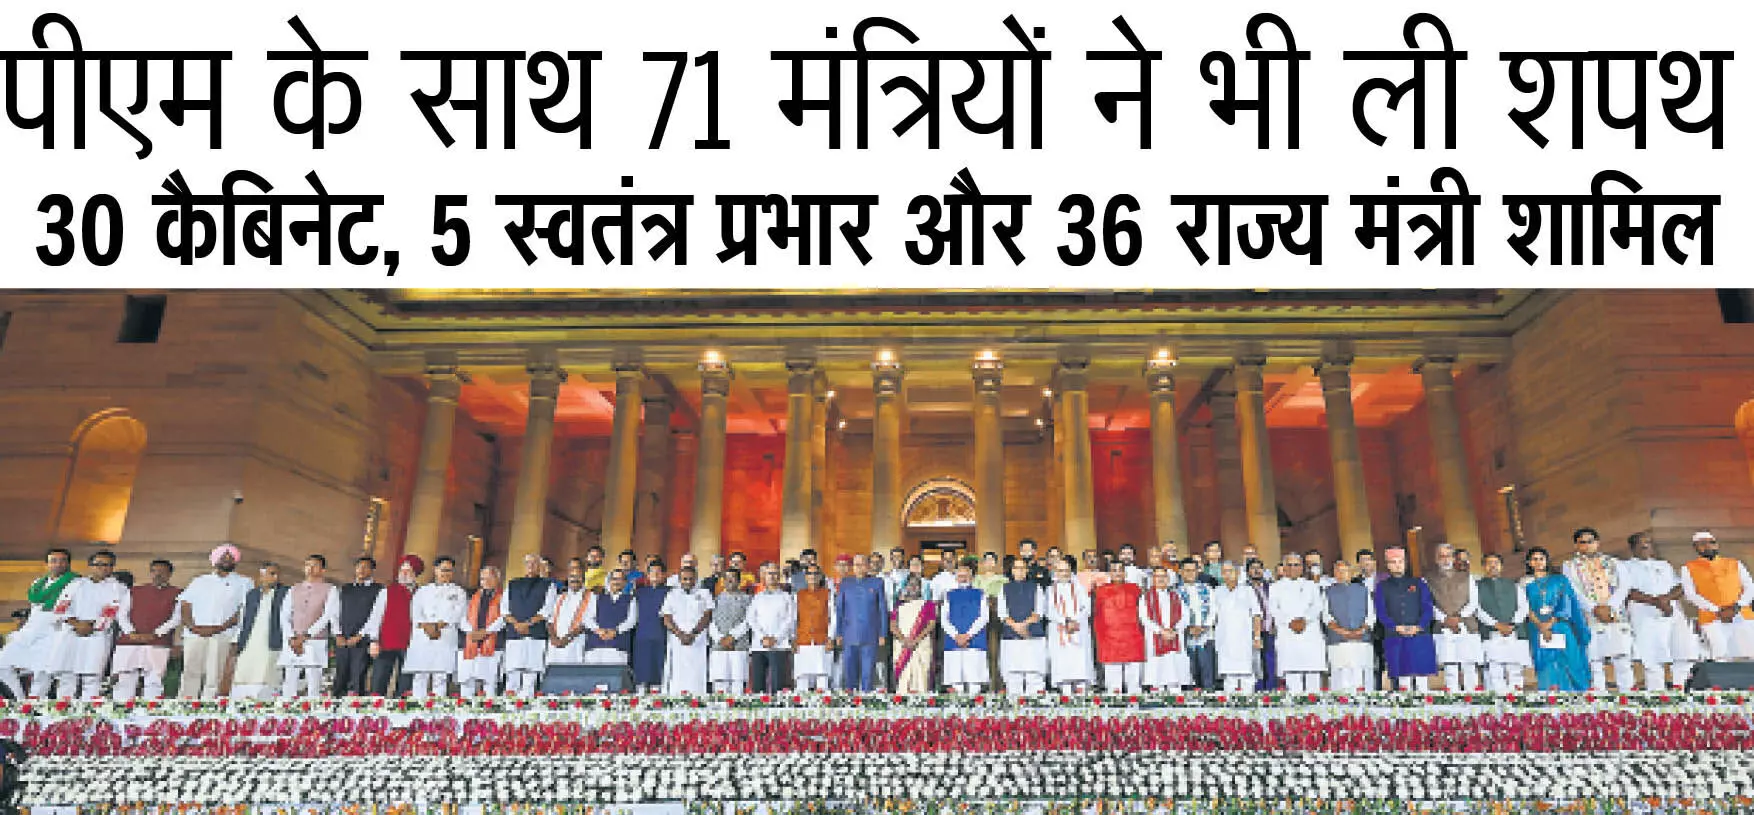 DELHI :  पीएम के साथ 71 मंत्रियों ने भी ली शपथ  30 कैबिनेट, 5 स्वतंत्र प्रभार और 36 राज्य मंत्री शामिल